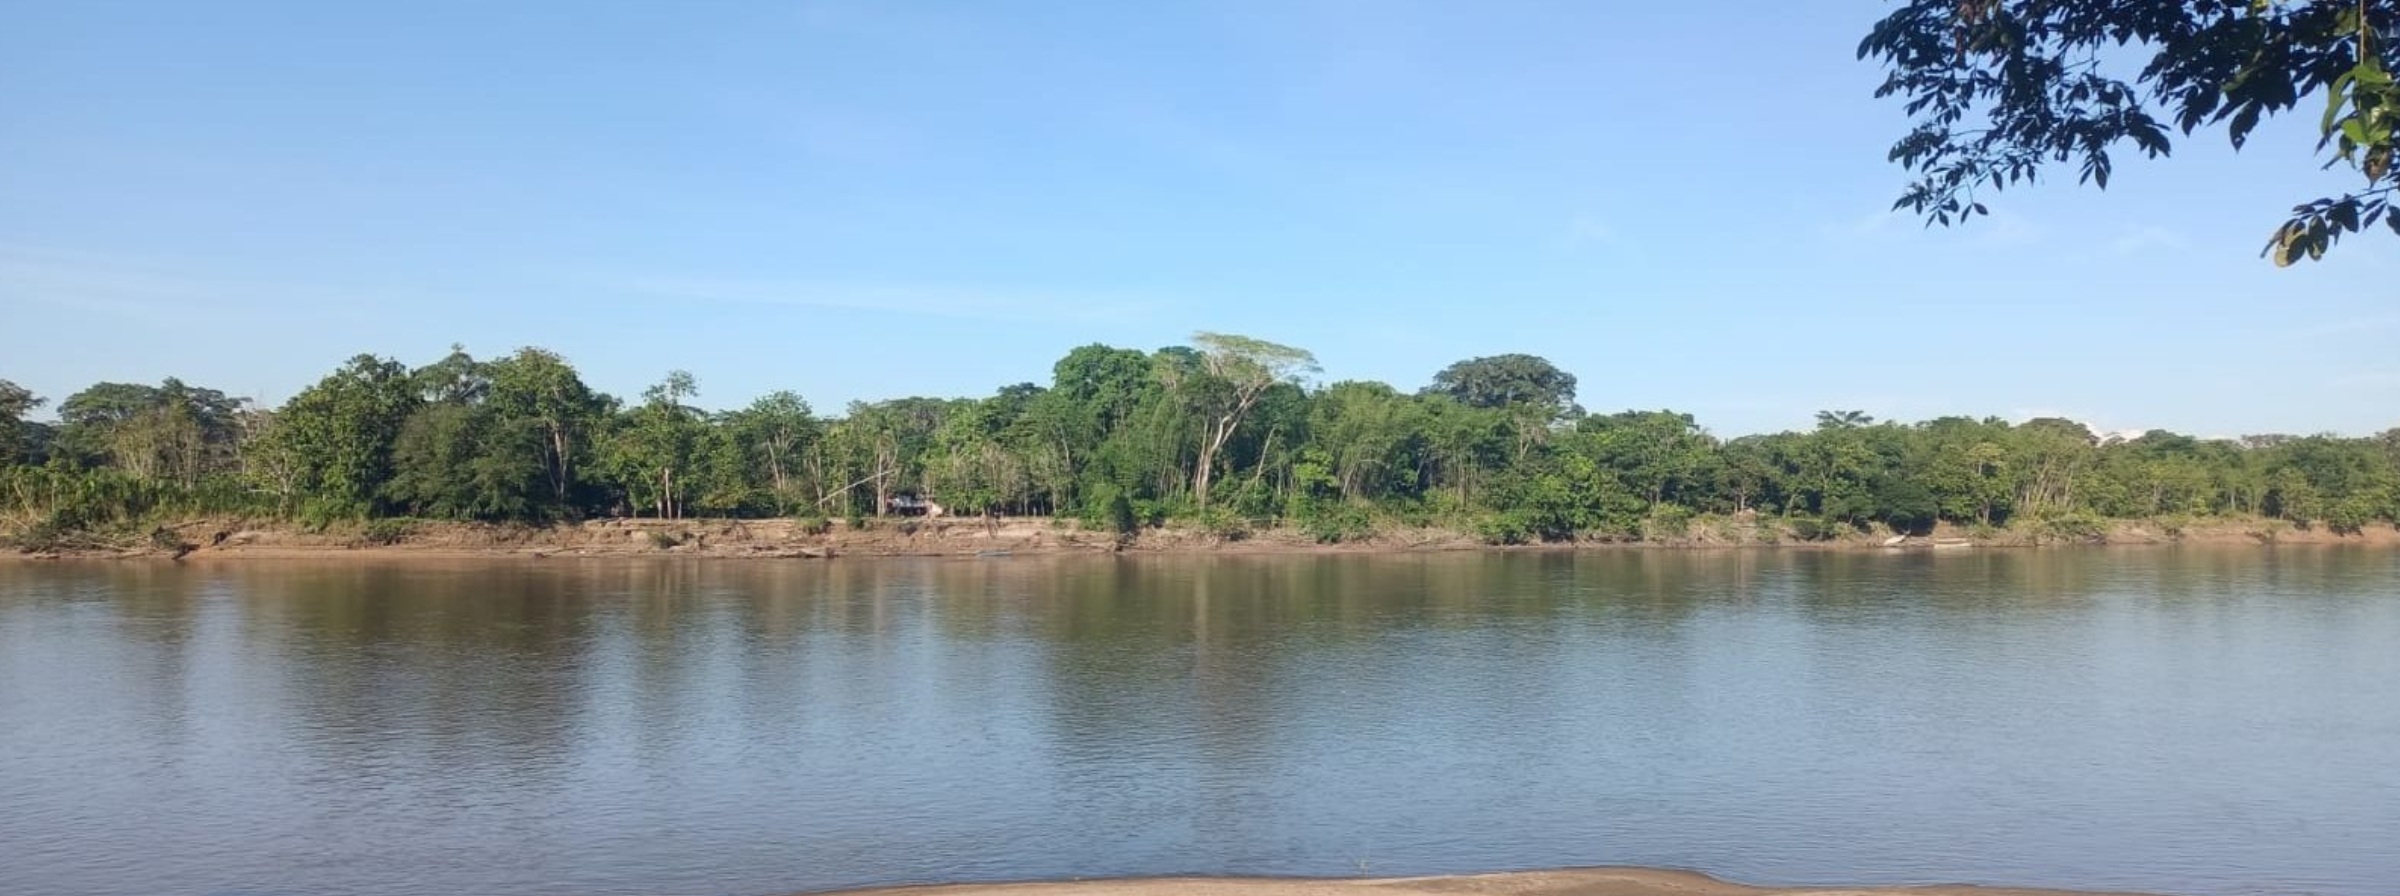 Candice Welsch, representante de UNODC: “El río Putumayo se ha convertido en la pista por excelencia para el transporte de coca”